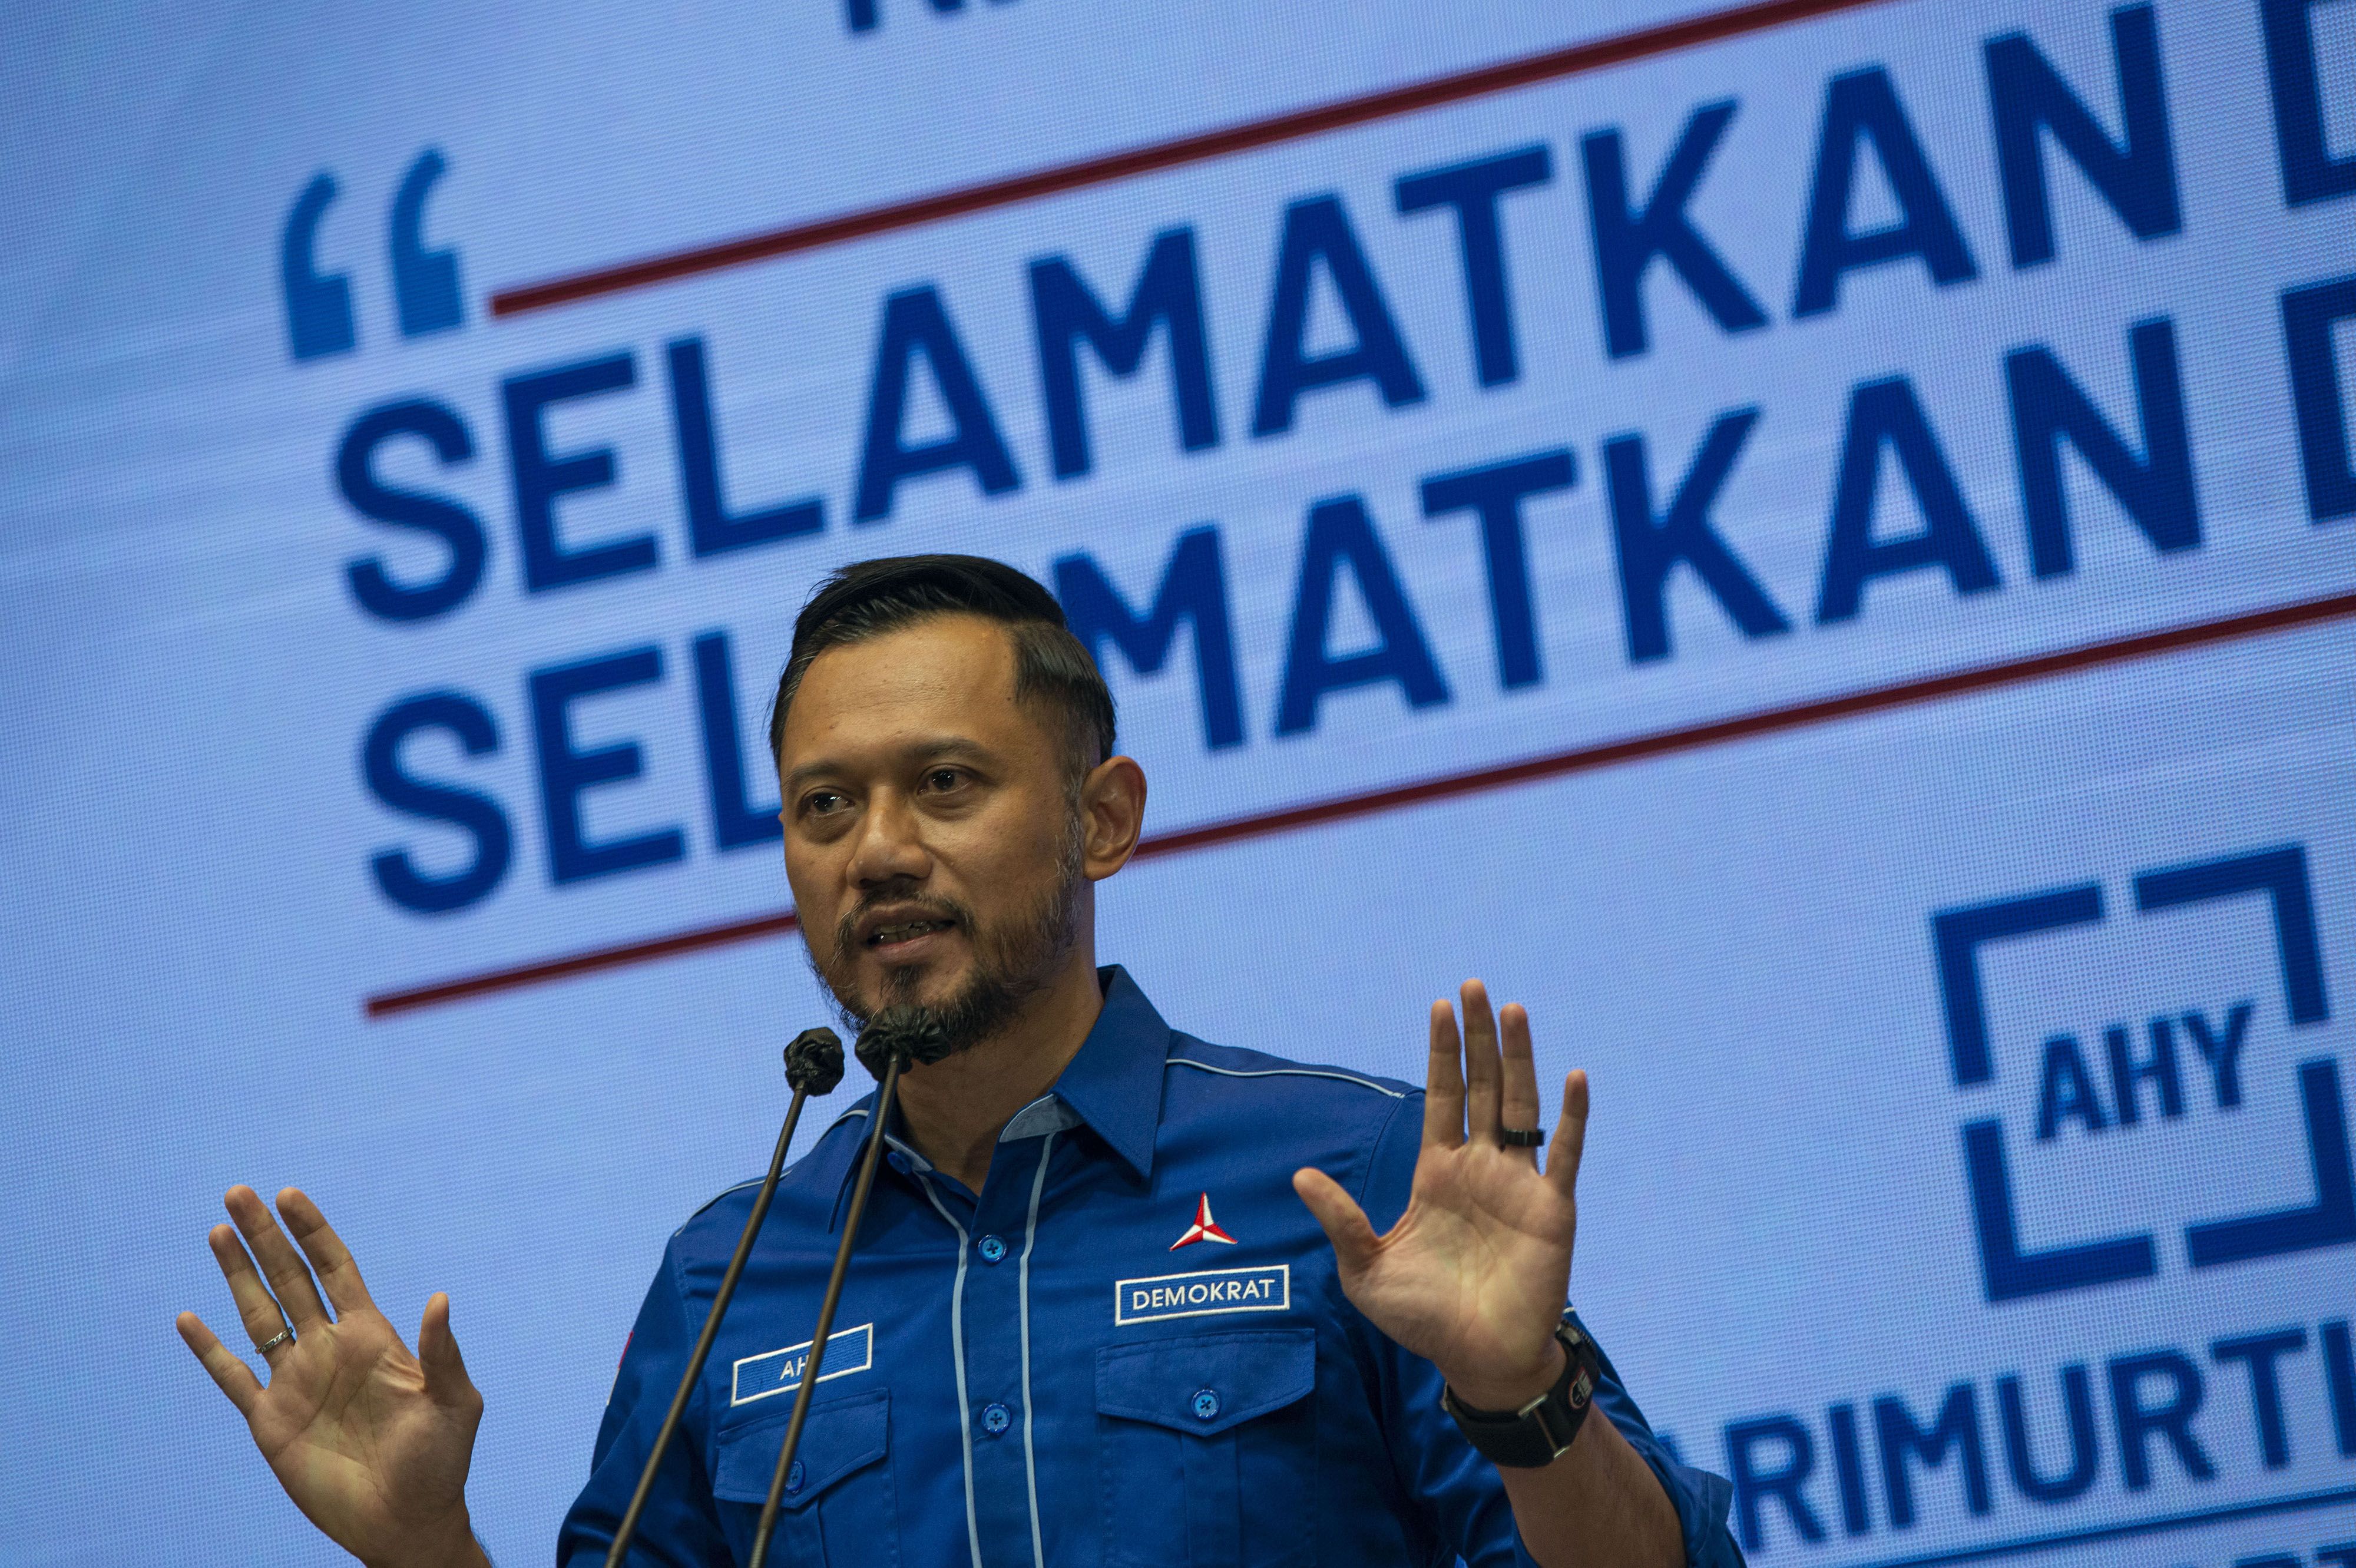 Ketua Umum Partai Demokrat Agus Harimurti Yudhoyono (AHY) menyampaikan keterangan kepada wartawan terkait Kongres Luar Biasa (KLB) Partai Demokrat yang dinilai ilegal di Jakarta, Jumat, 5 Maret 2021.